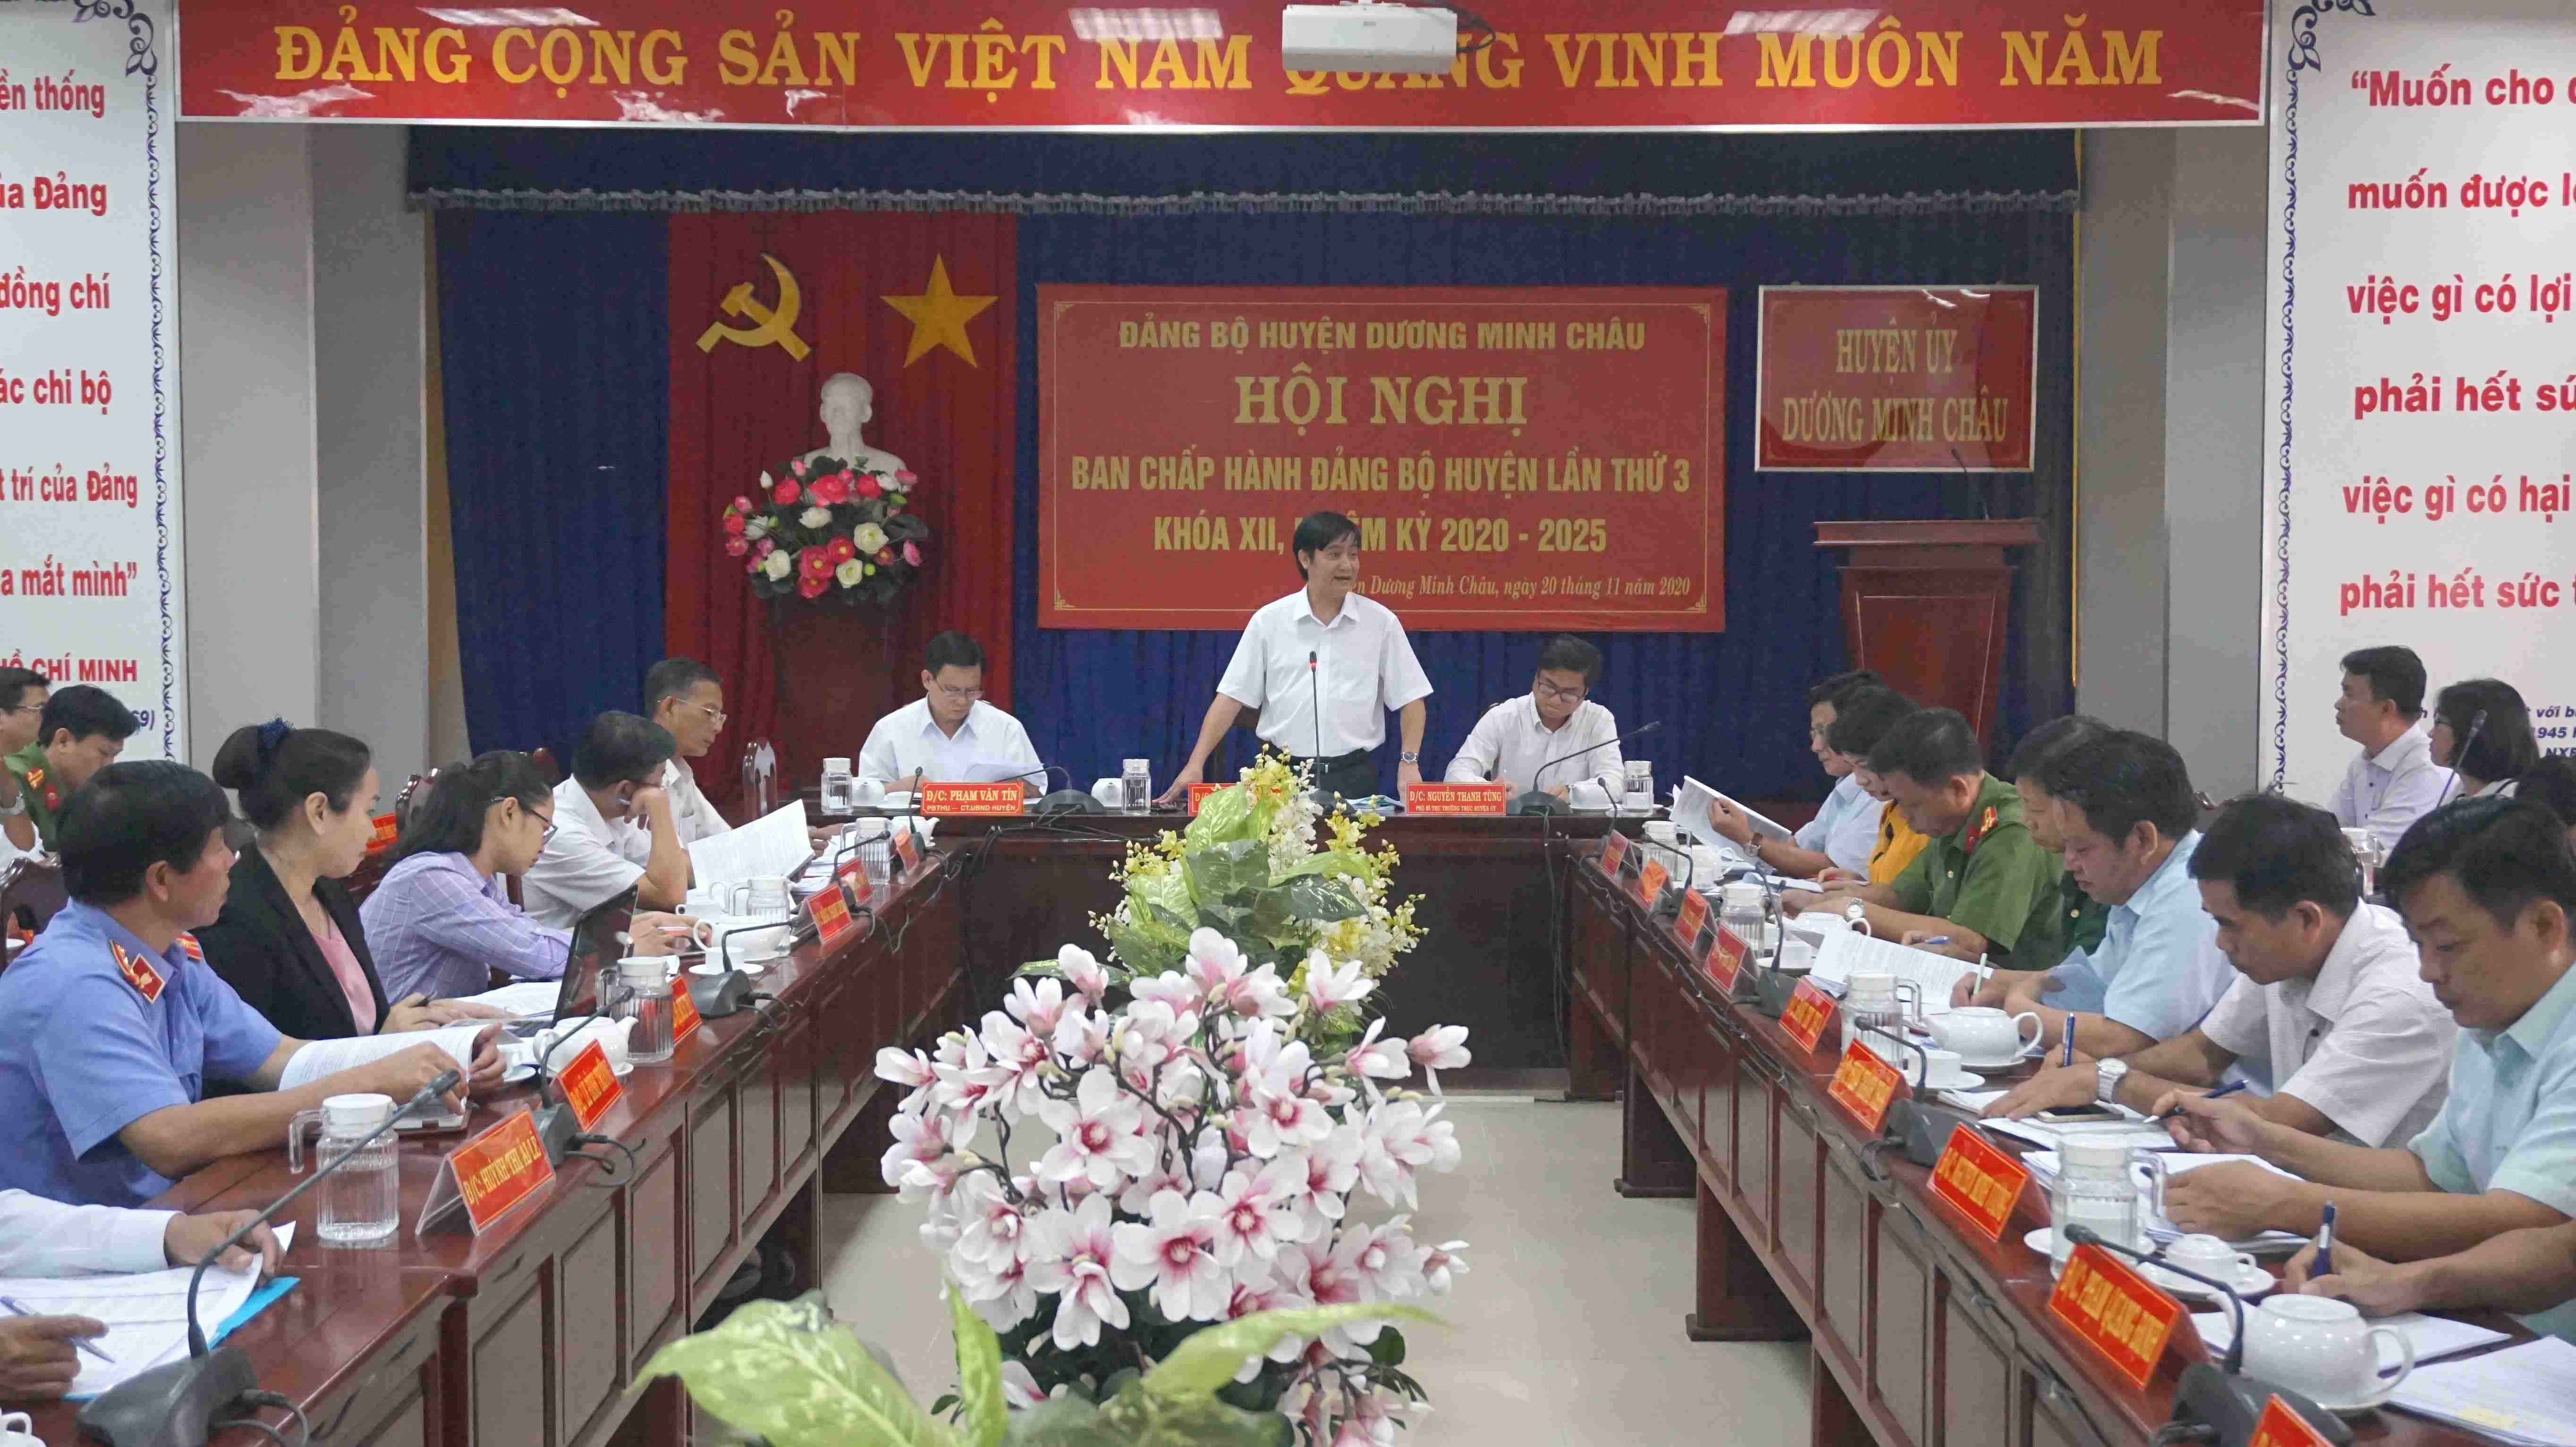 Huyện ủy Dương Minh Châu:  Tổ chức hội nghị Ban Chấp hành Đảng bộ huyện lần thứ 3